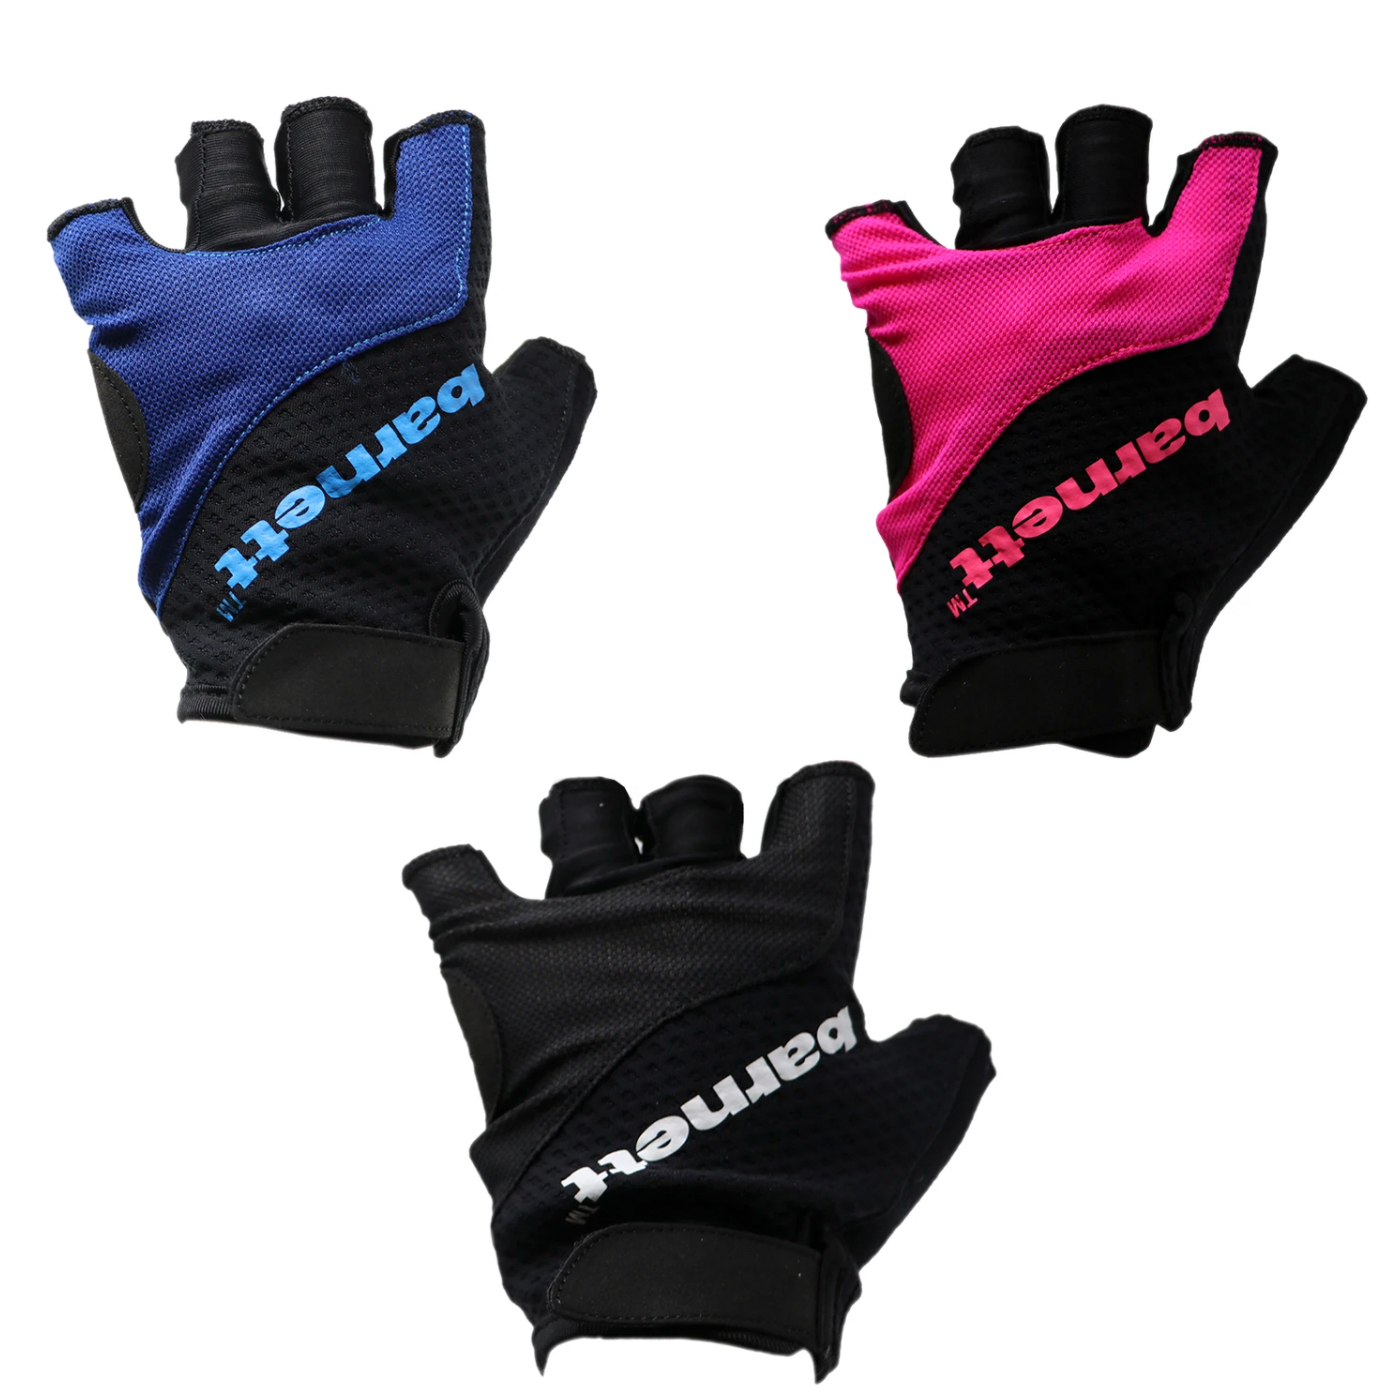 BG-07 Fingerless bike gloves for competitions